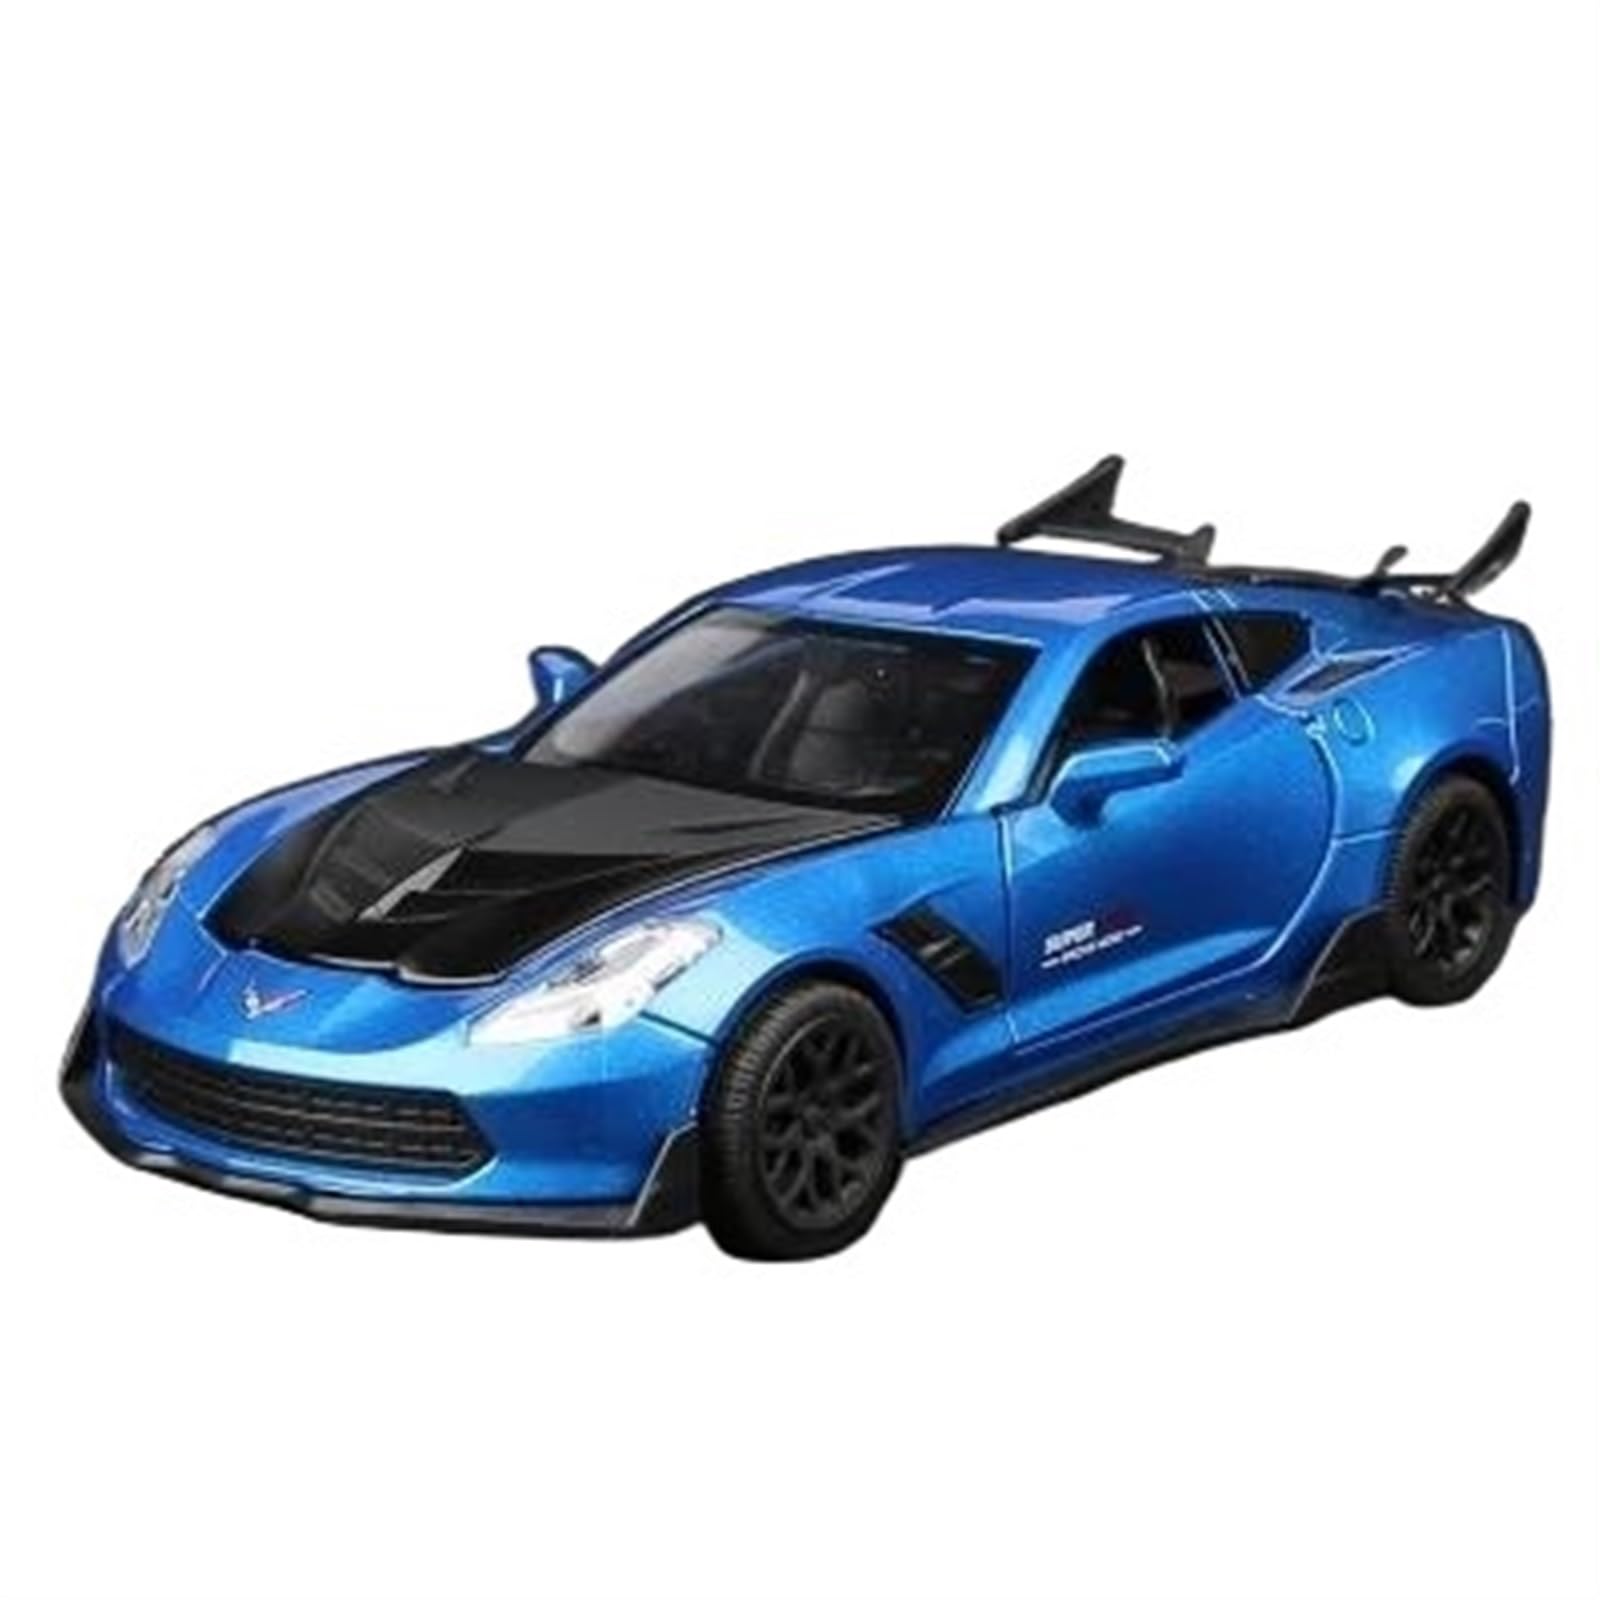 Druckguss-Auto im Maßstab 1:32 für Corvette Z06 Legierung Sportwagen Modell Druckguss Metallauto Modell mit Sound und Licht Sammlermodell Fahrzeug (Farbe: B)